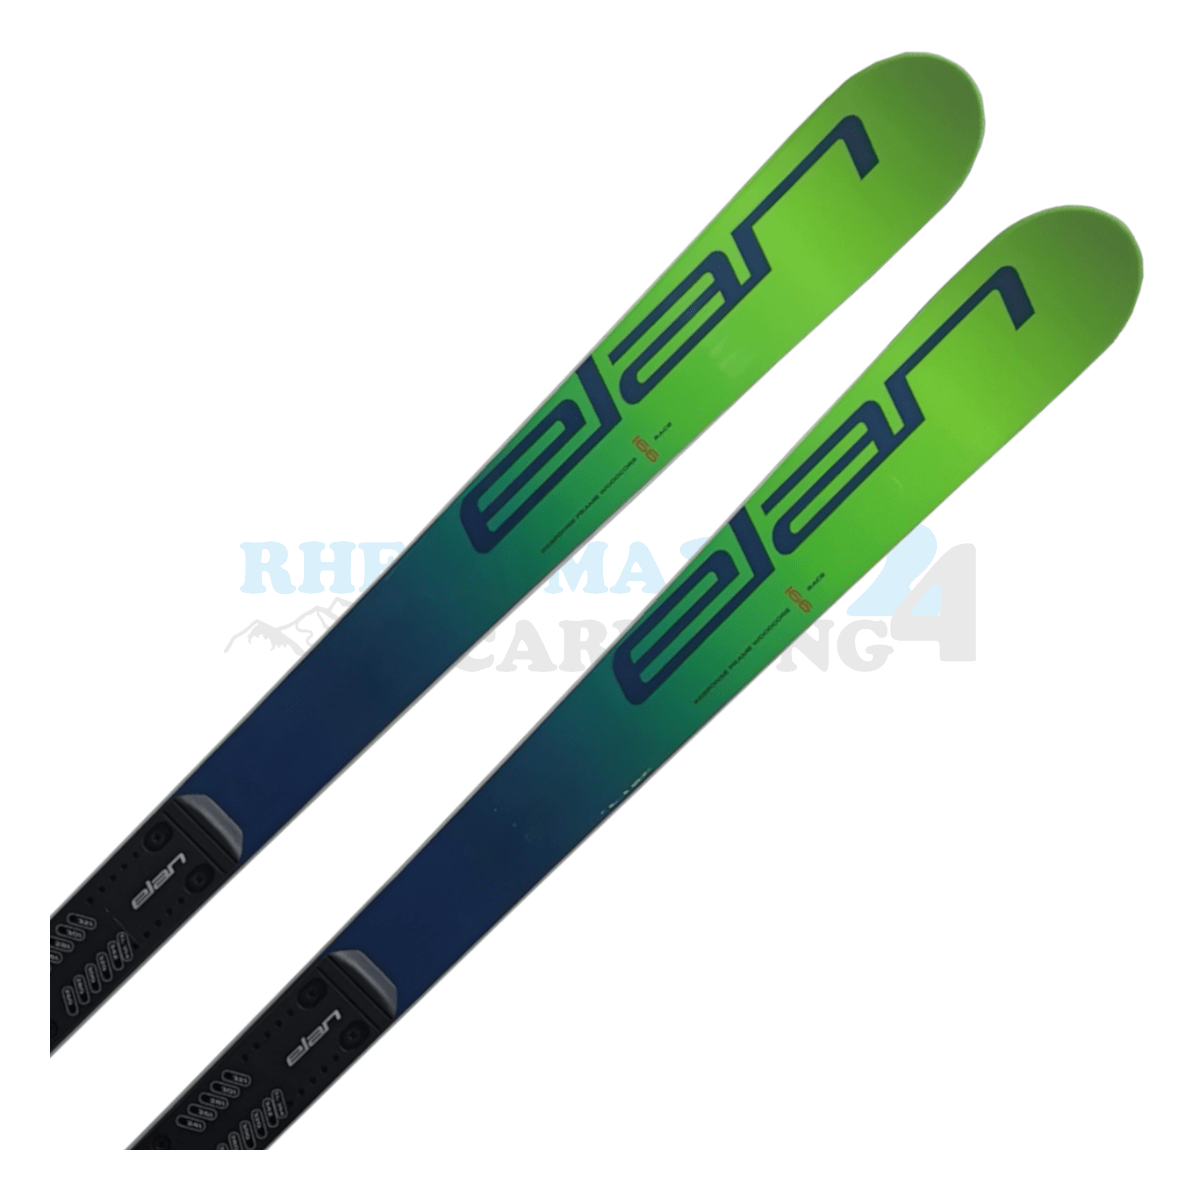 Elan GSX mit Platte, der Ski ist in der Farbe grün, Ansicht des oberen Teils des Skis 